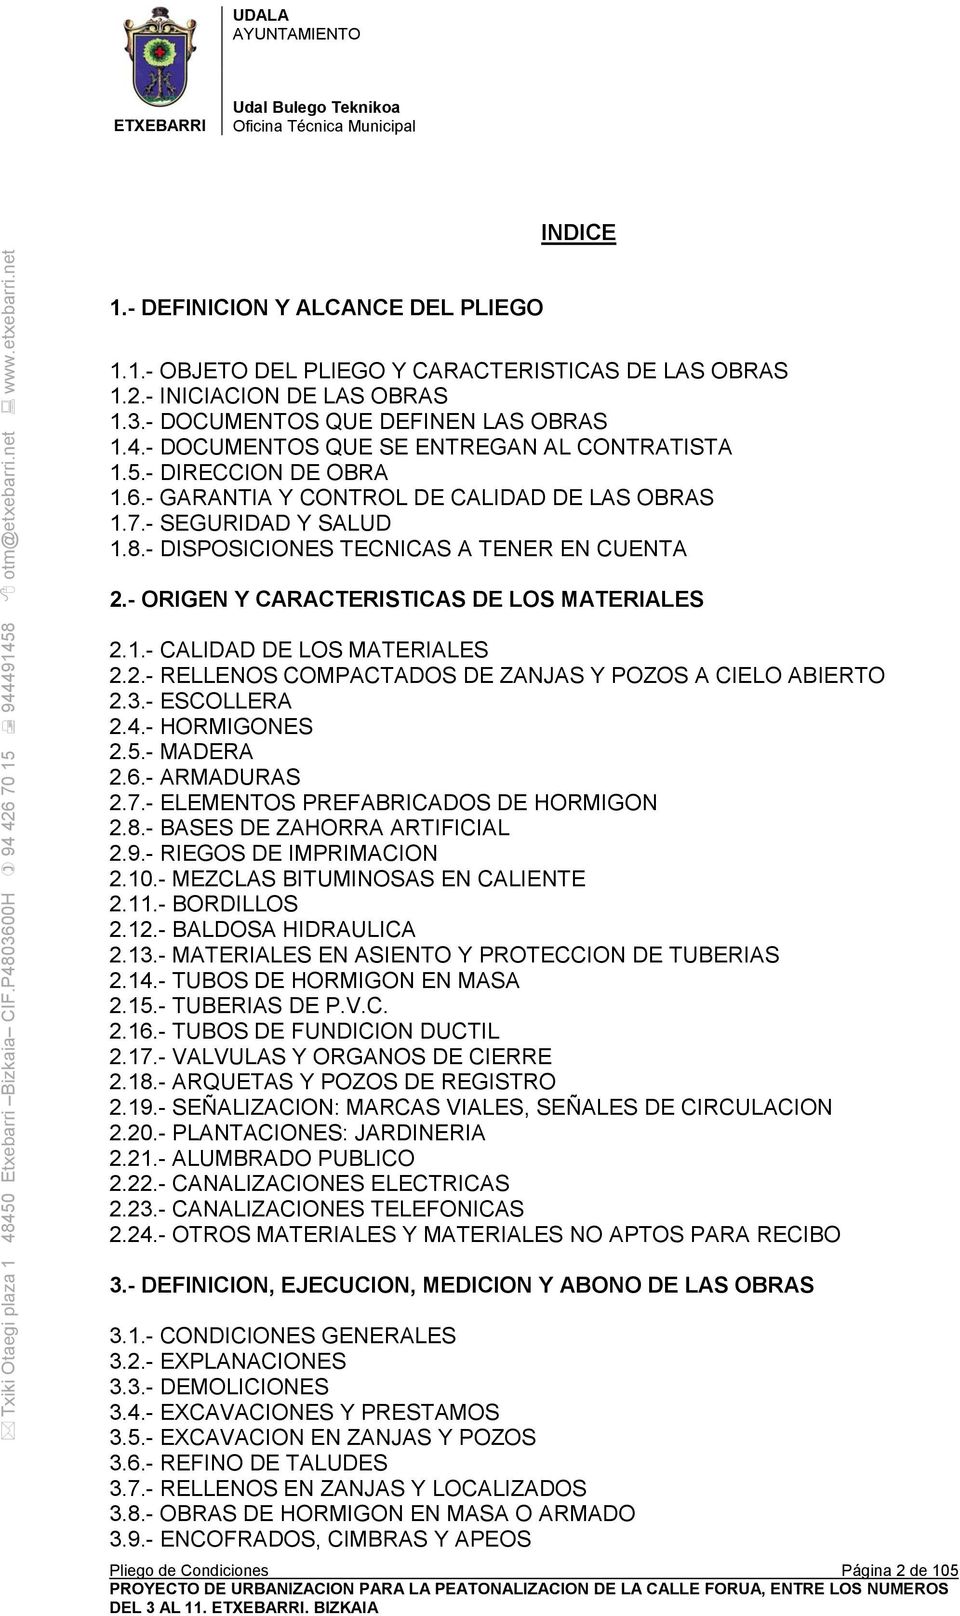 - ORIGEN Y CARACTERISTICAS DE LOS MATERIALES 2.1.- CALIDAD DE LOS MATERIALES 2.2.- RELLENOS COMPACTADOS DE ZANJAS Y POZOS A CIELO ABIERTO 2.3.- ESCOLLERA 2.4.- HORMIGONES 2.5.- MADERA 2.6.